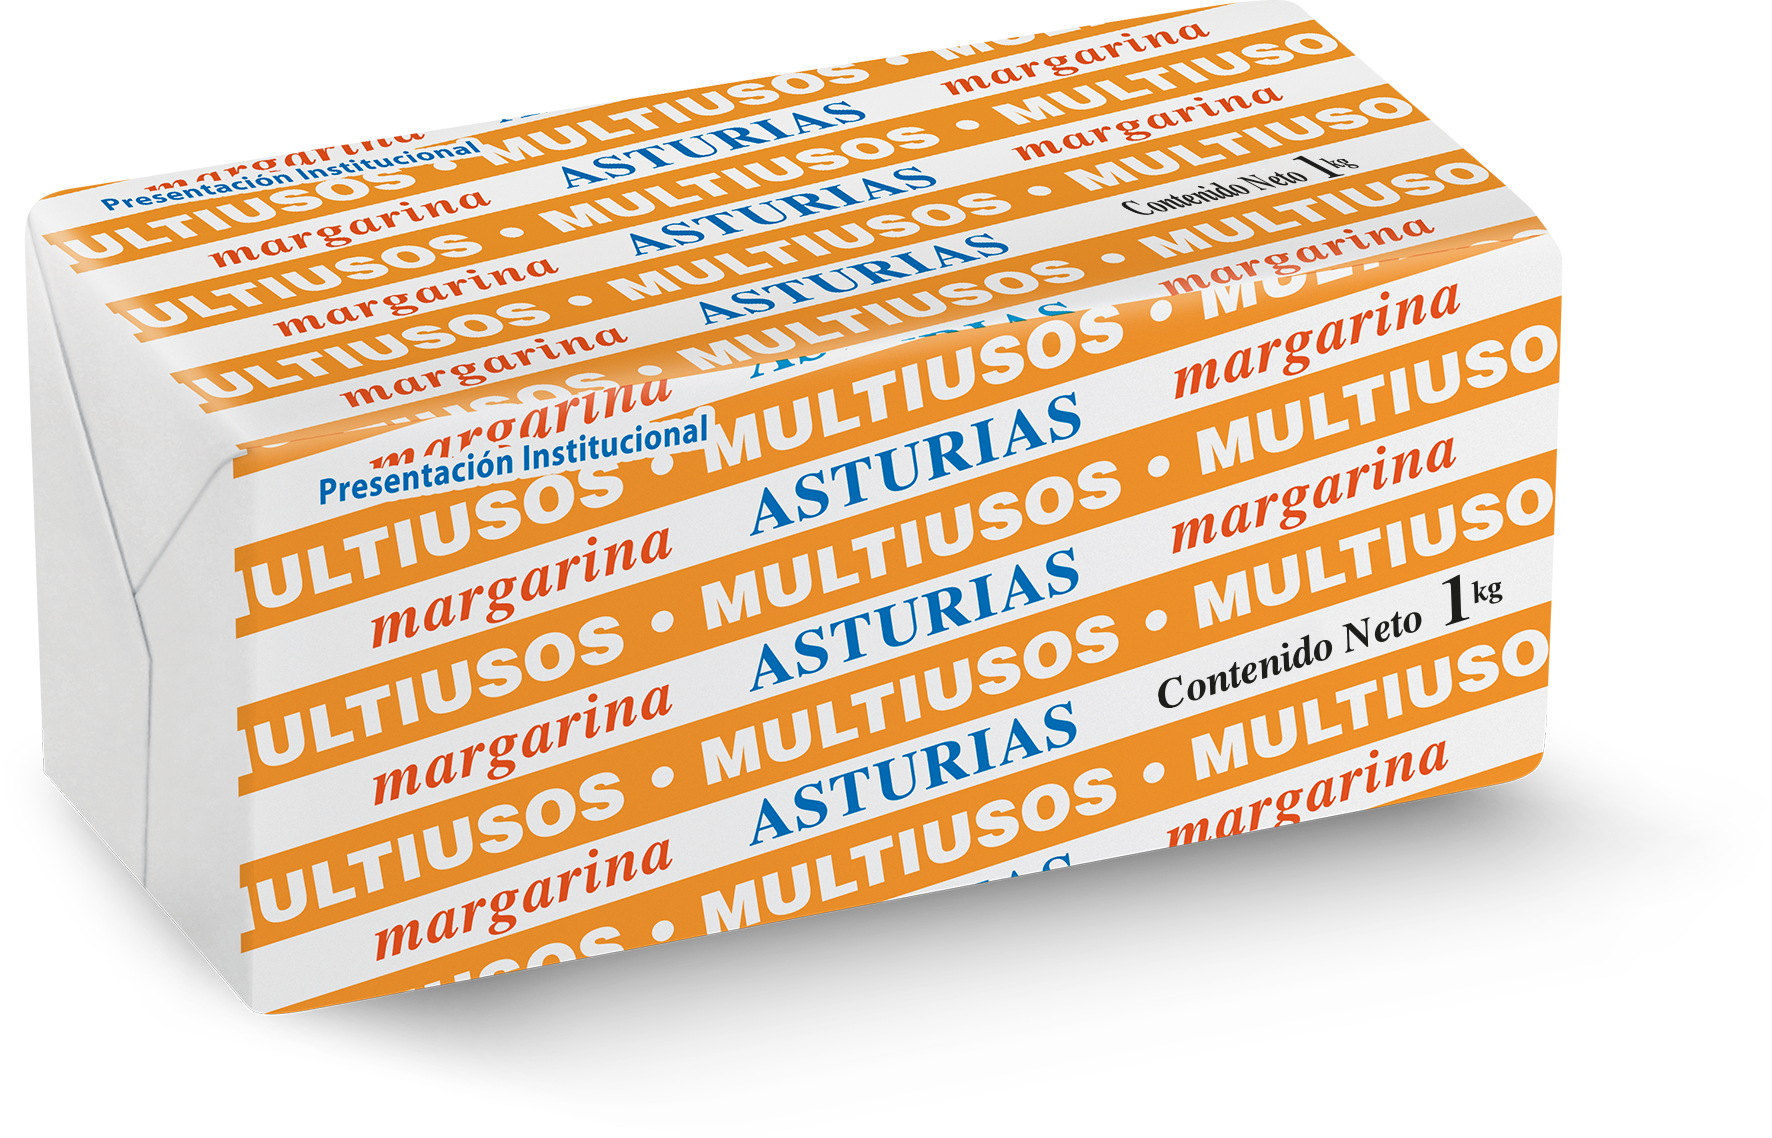 18  |  Asturias Multiusos
Caja de 10 kg (10 barras de 1 kg)